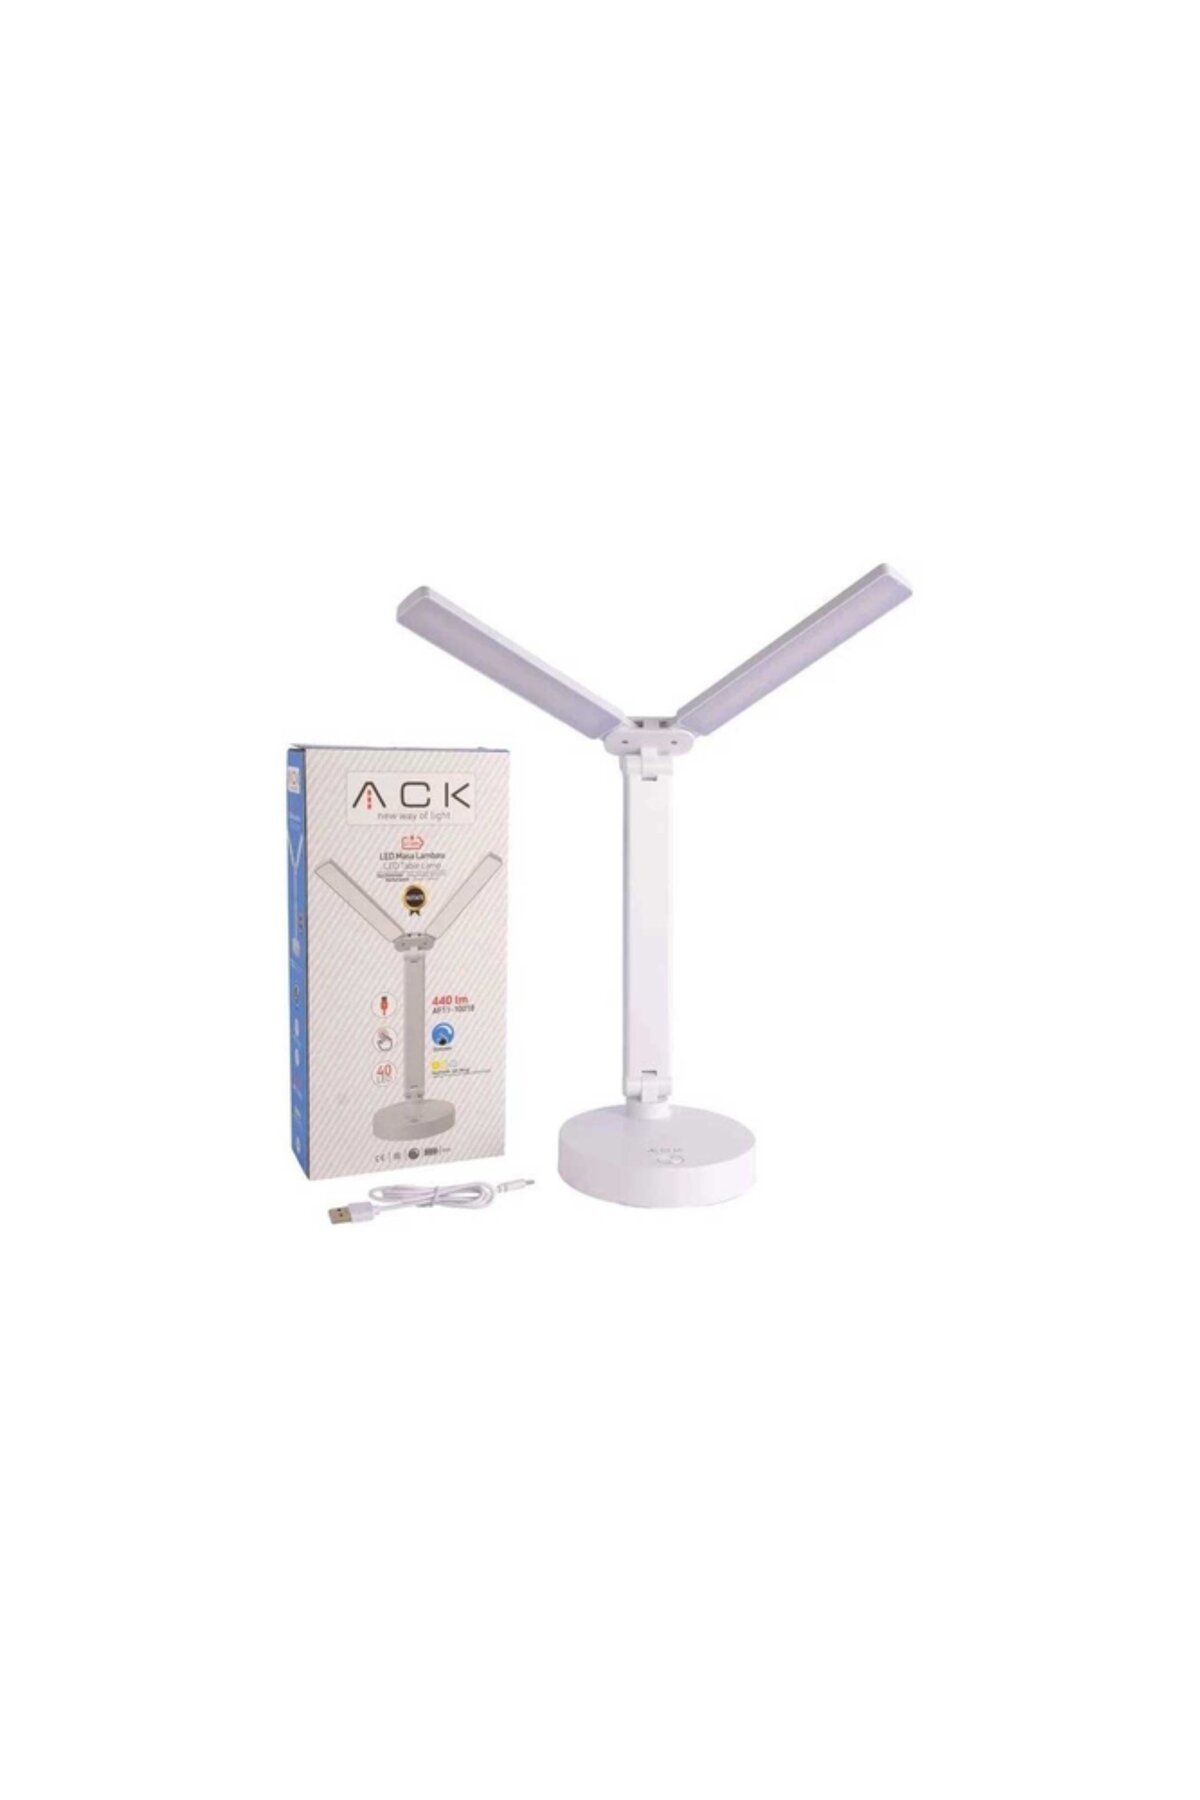 Ack AF11-10018 Şarj Edilebilir Masa Lambası - Beyaz